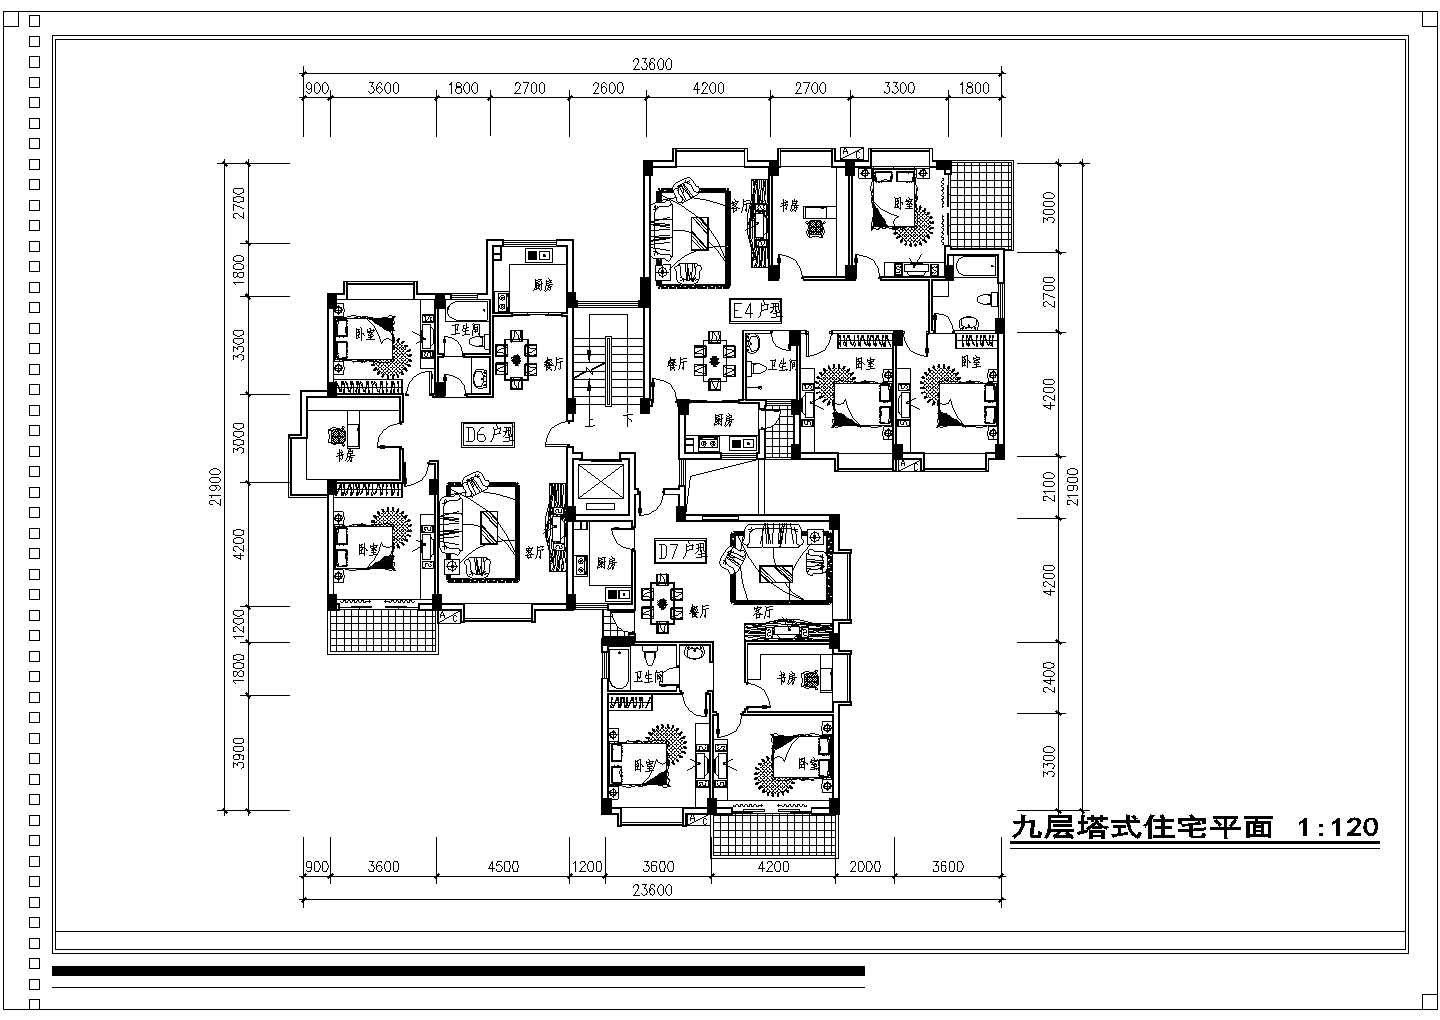 福州新型小区某住宅全体规划设计方案图(含塔式住宅平面图)